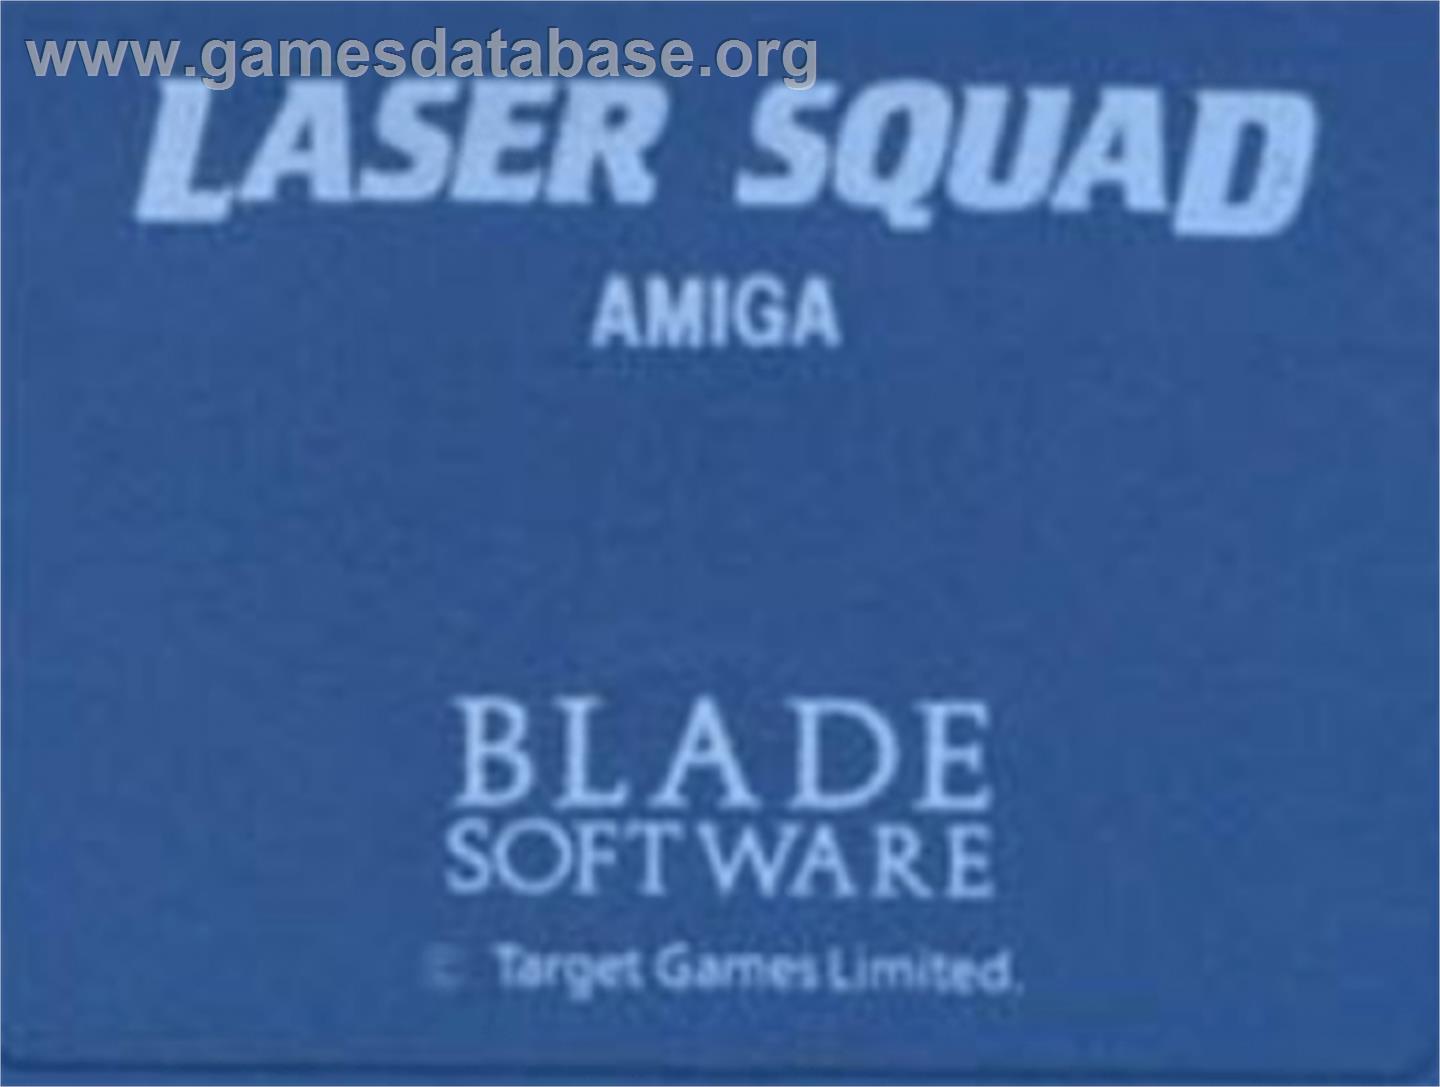 Laser Squad - Commodore Amiga - Artwork - Cartridge Top